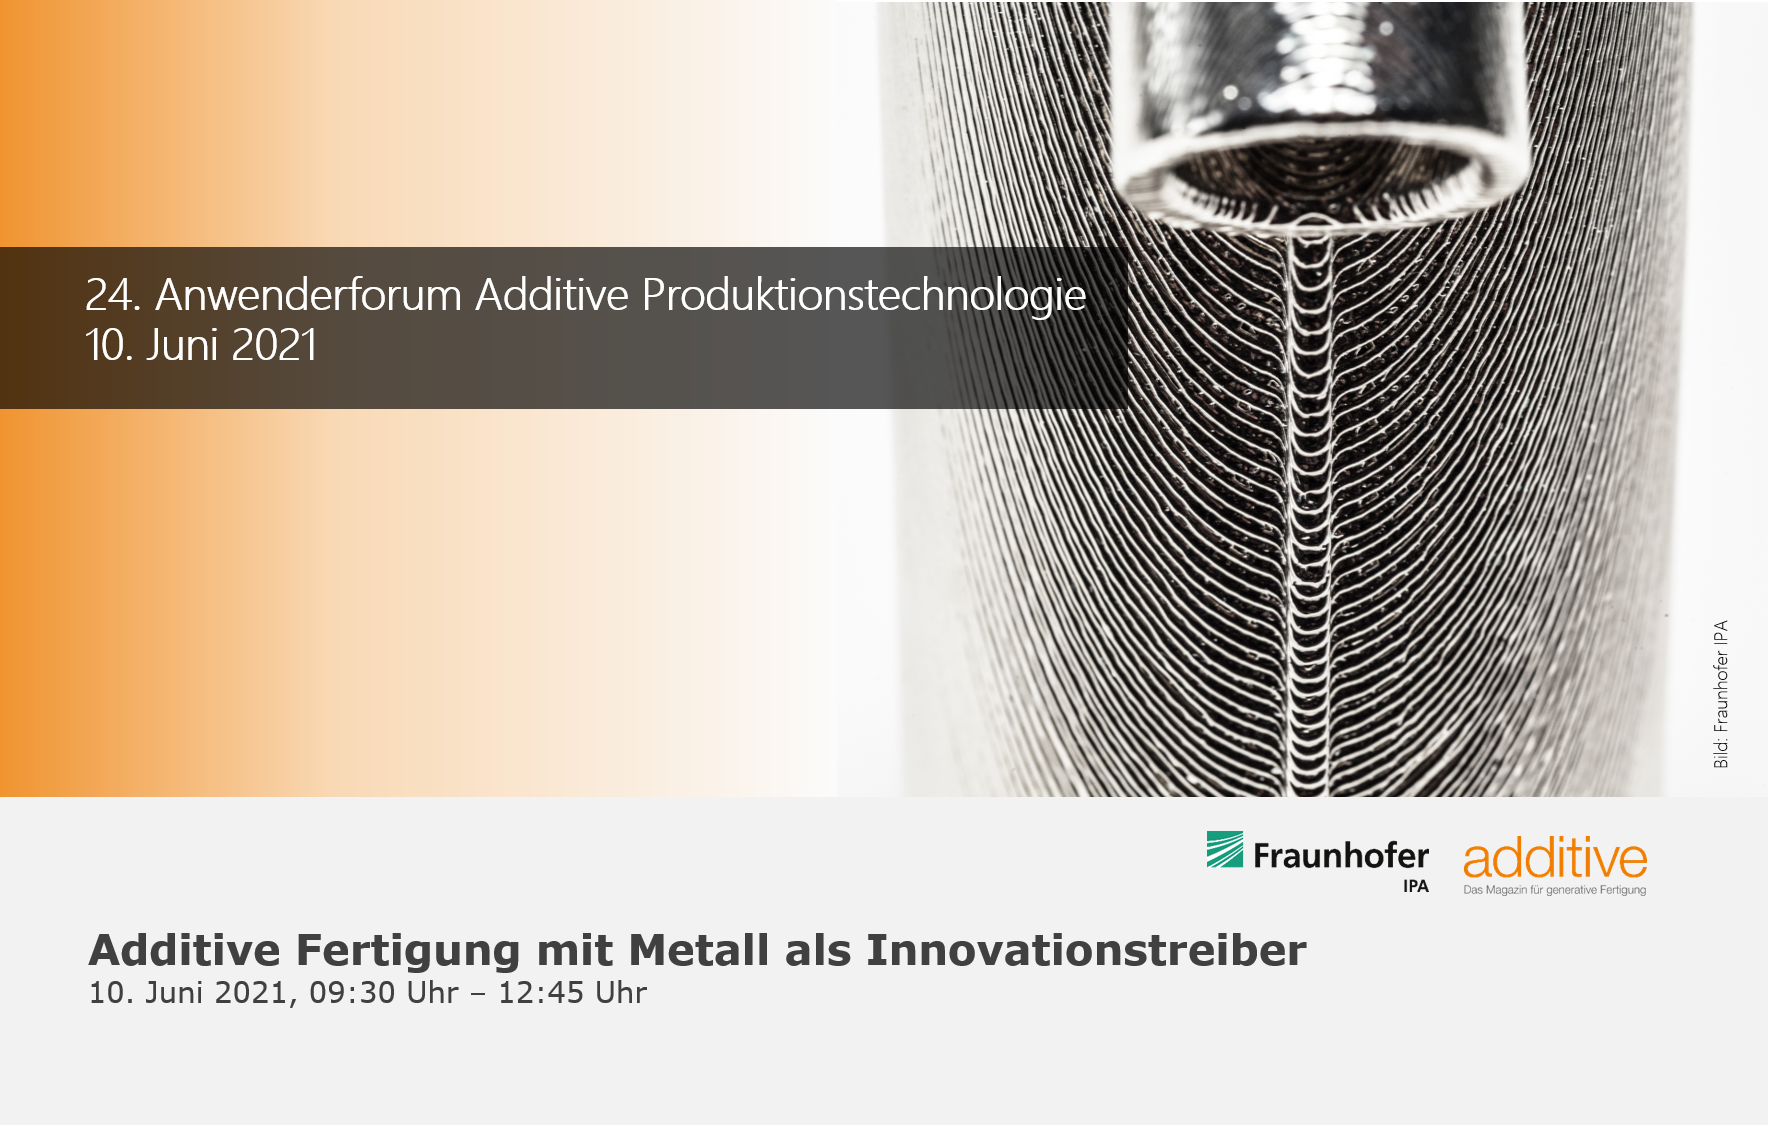 Anwenderforum Additive Produktionstechnologie 2021 – Additive Fertigung mit Metall als Innovationstreiber